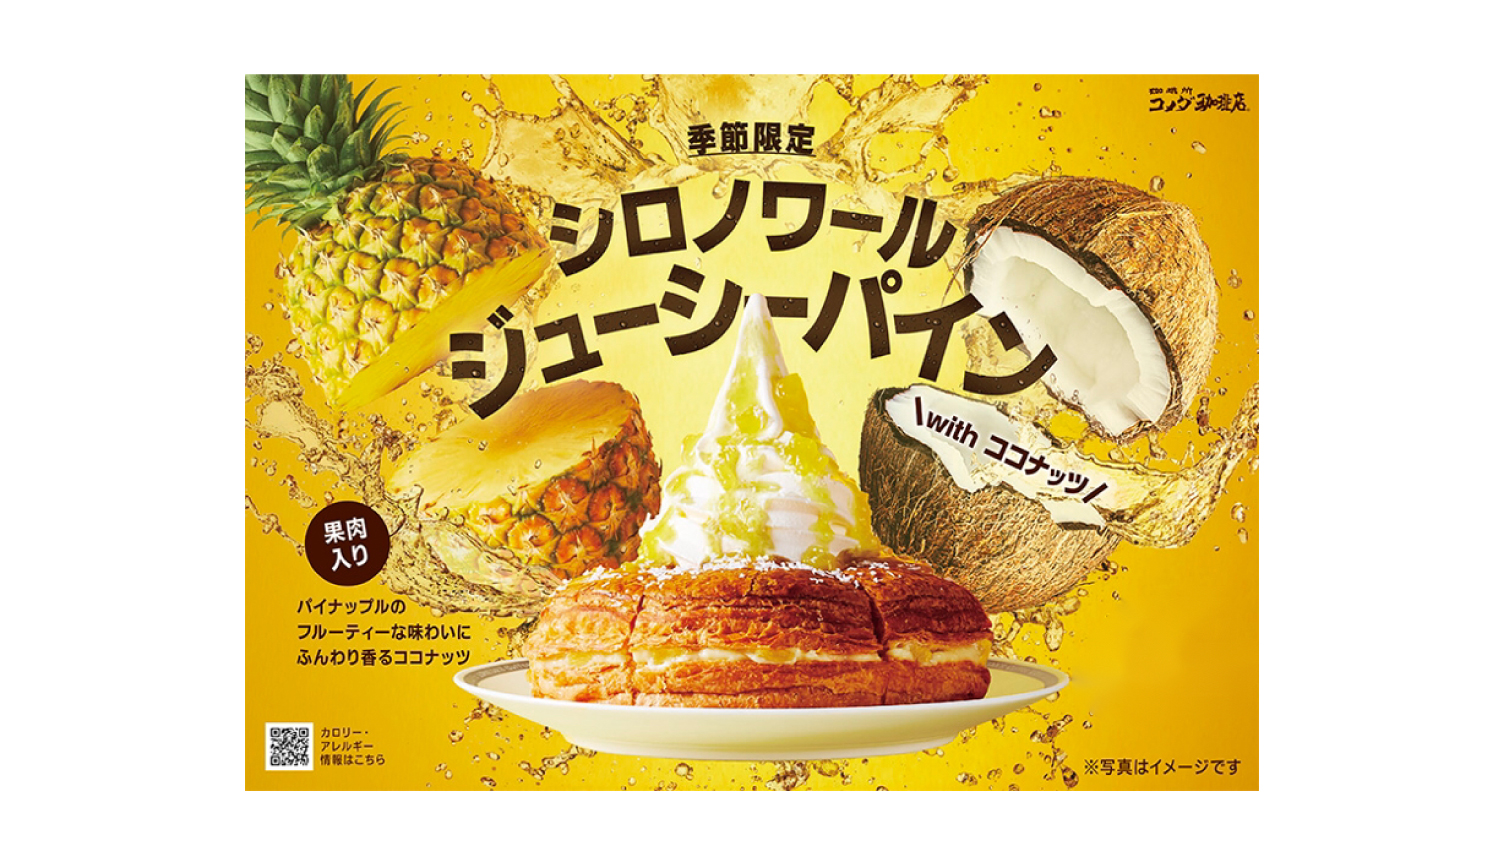 コメダ珈琲店から パイナップルとココナッツの南国情緒あふれる シロノワール ジューシーパイン 登場 Moshi Moshi Nippon もしもしにっぽん